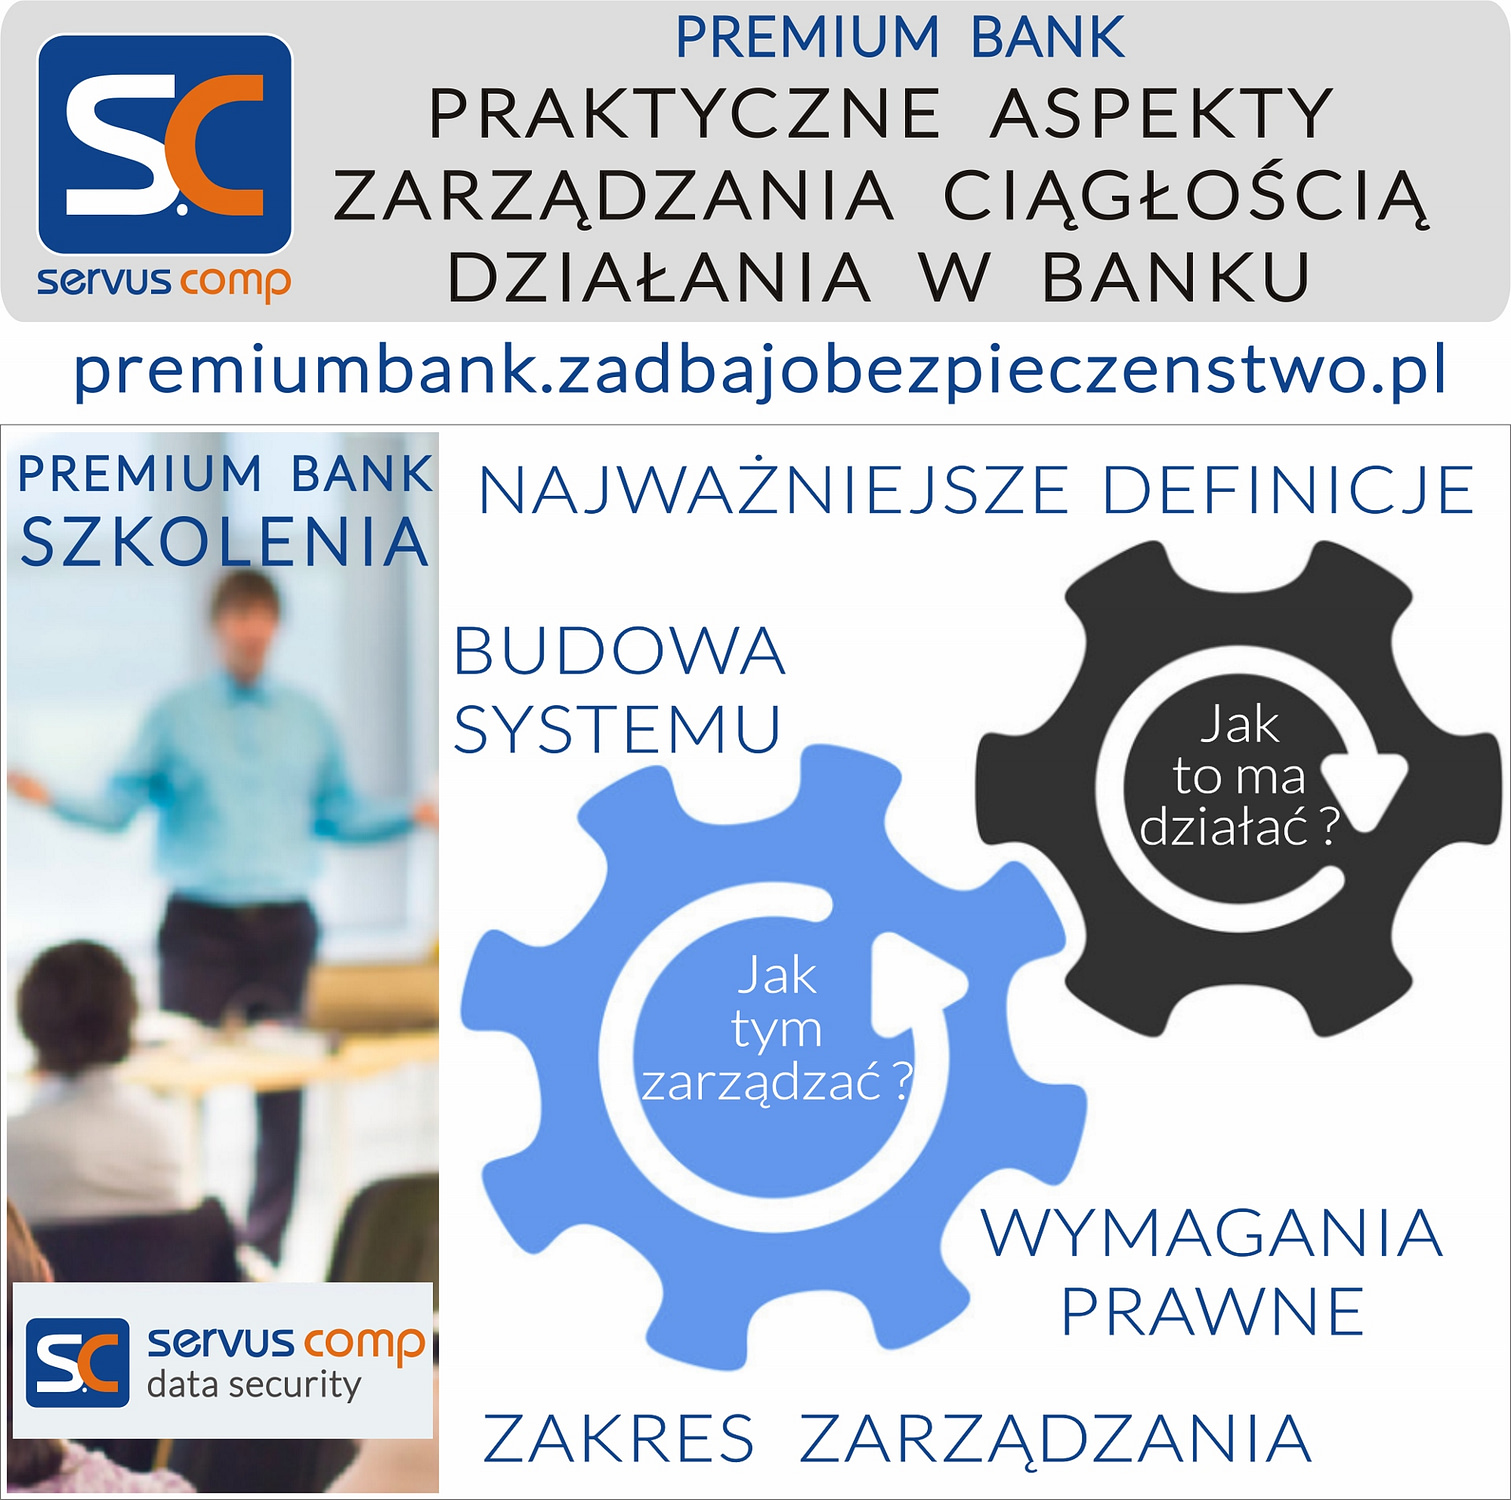 SZKOLENIE PREMIUM BANK PRAKTYCZNE ASPEKTY ZARZĄDZANIA CIAGŁOŚCIĄ DZIAŁANIA W BANKU Servus-comp.pl